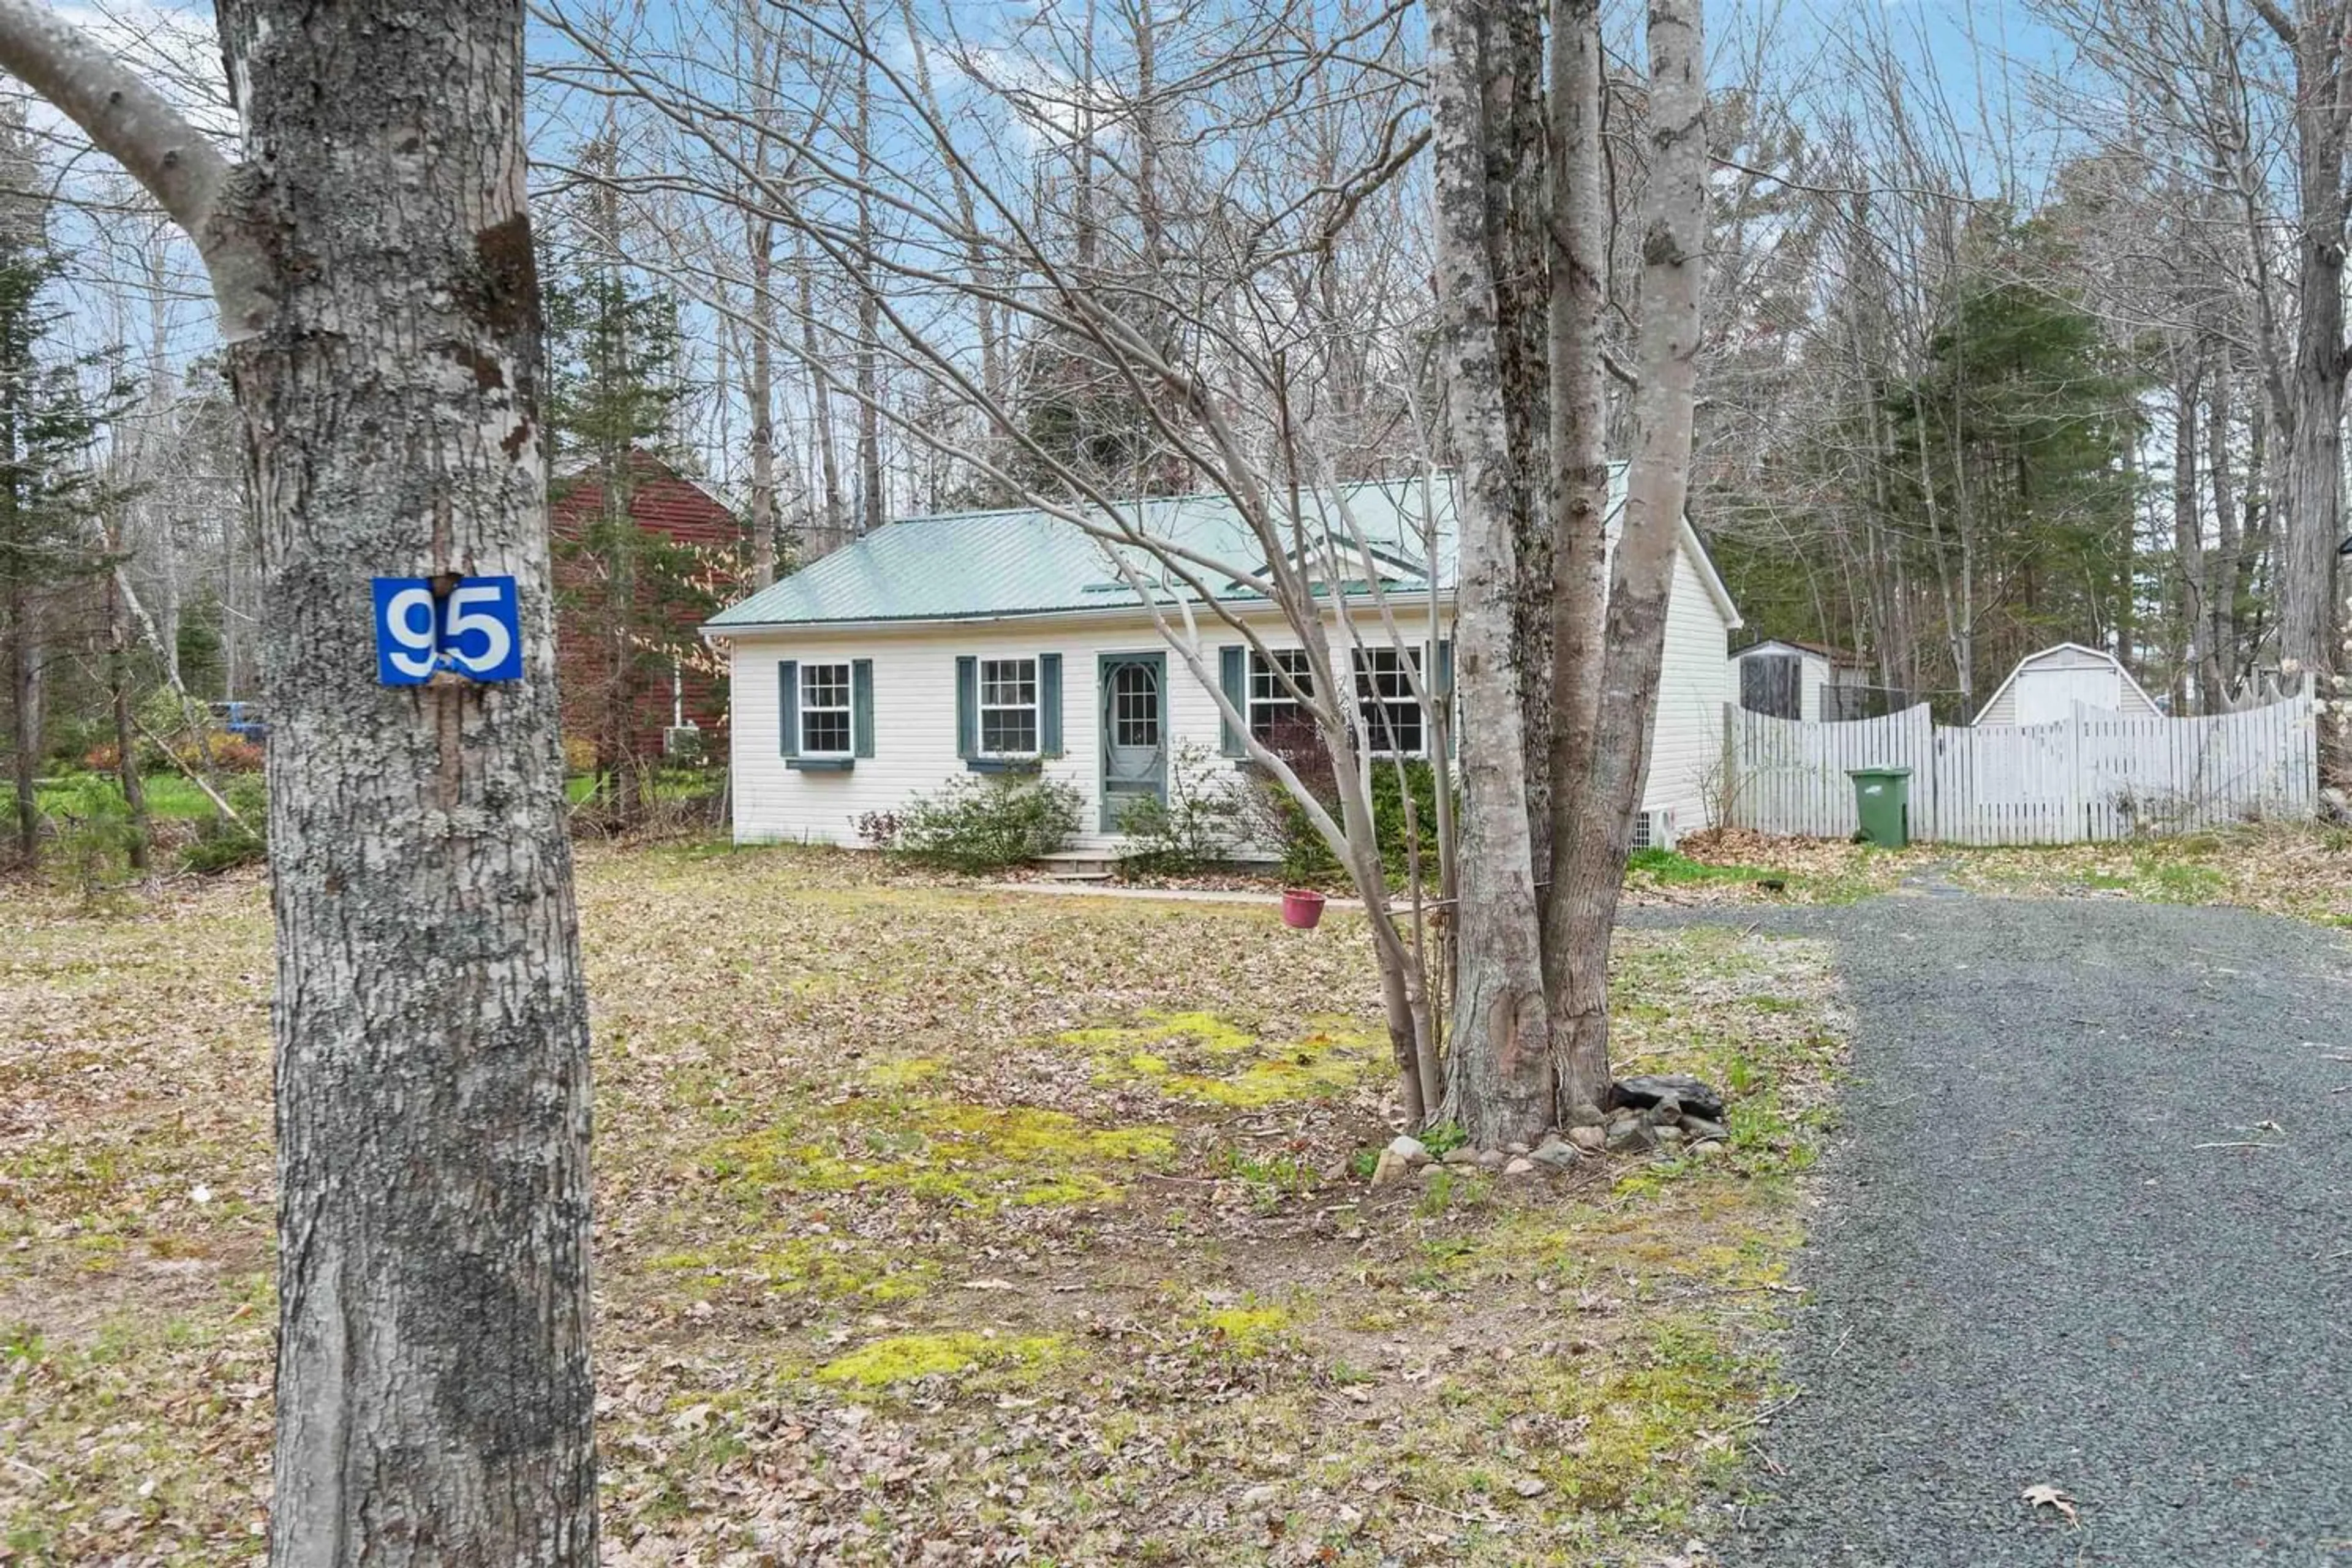 Cottage for 95 Colonial Dr, Nictaux Nova Scotia B0S 1P0